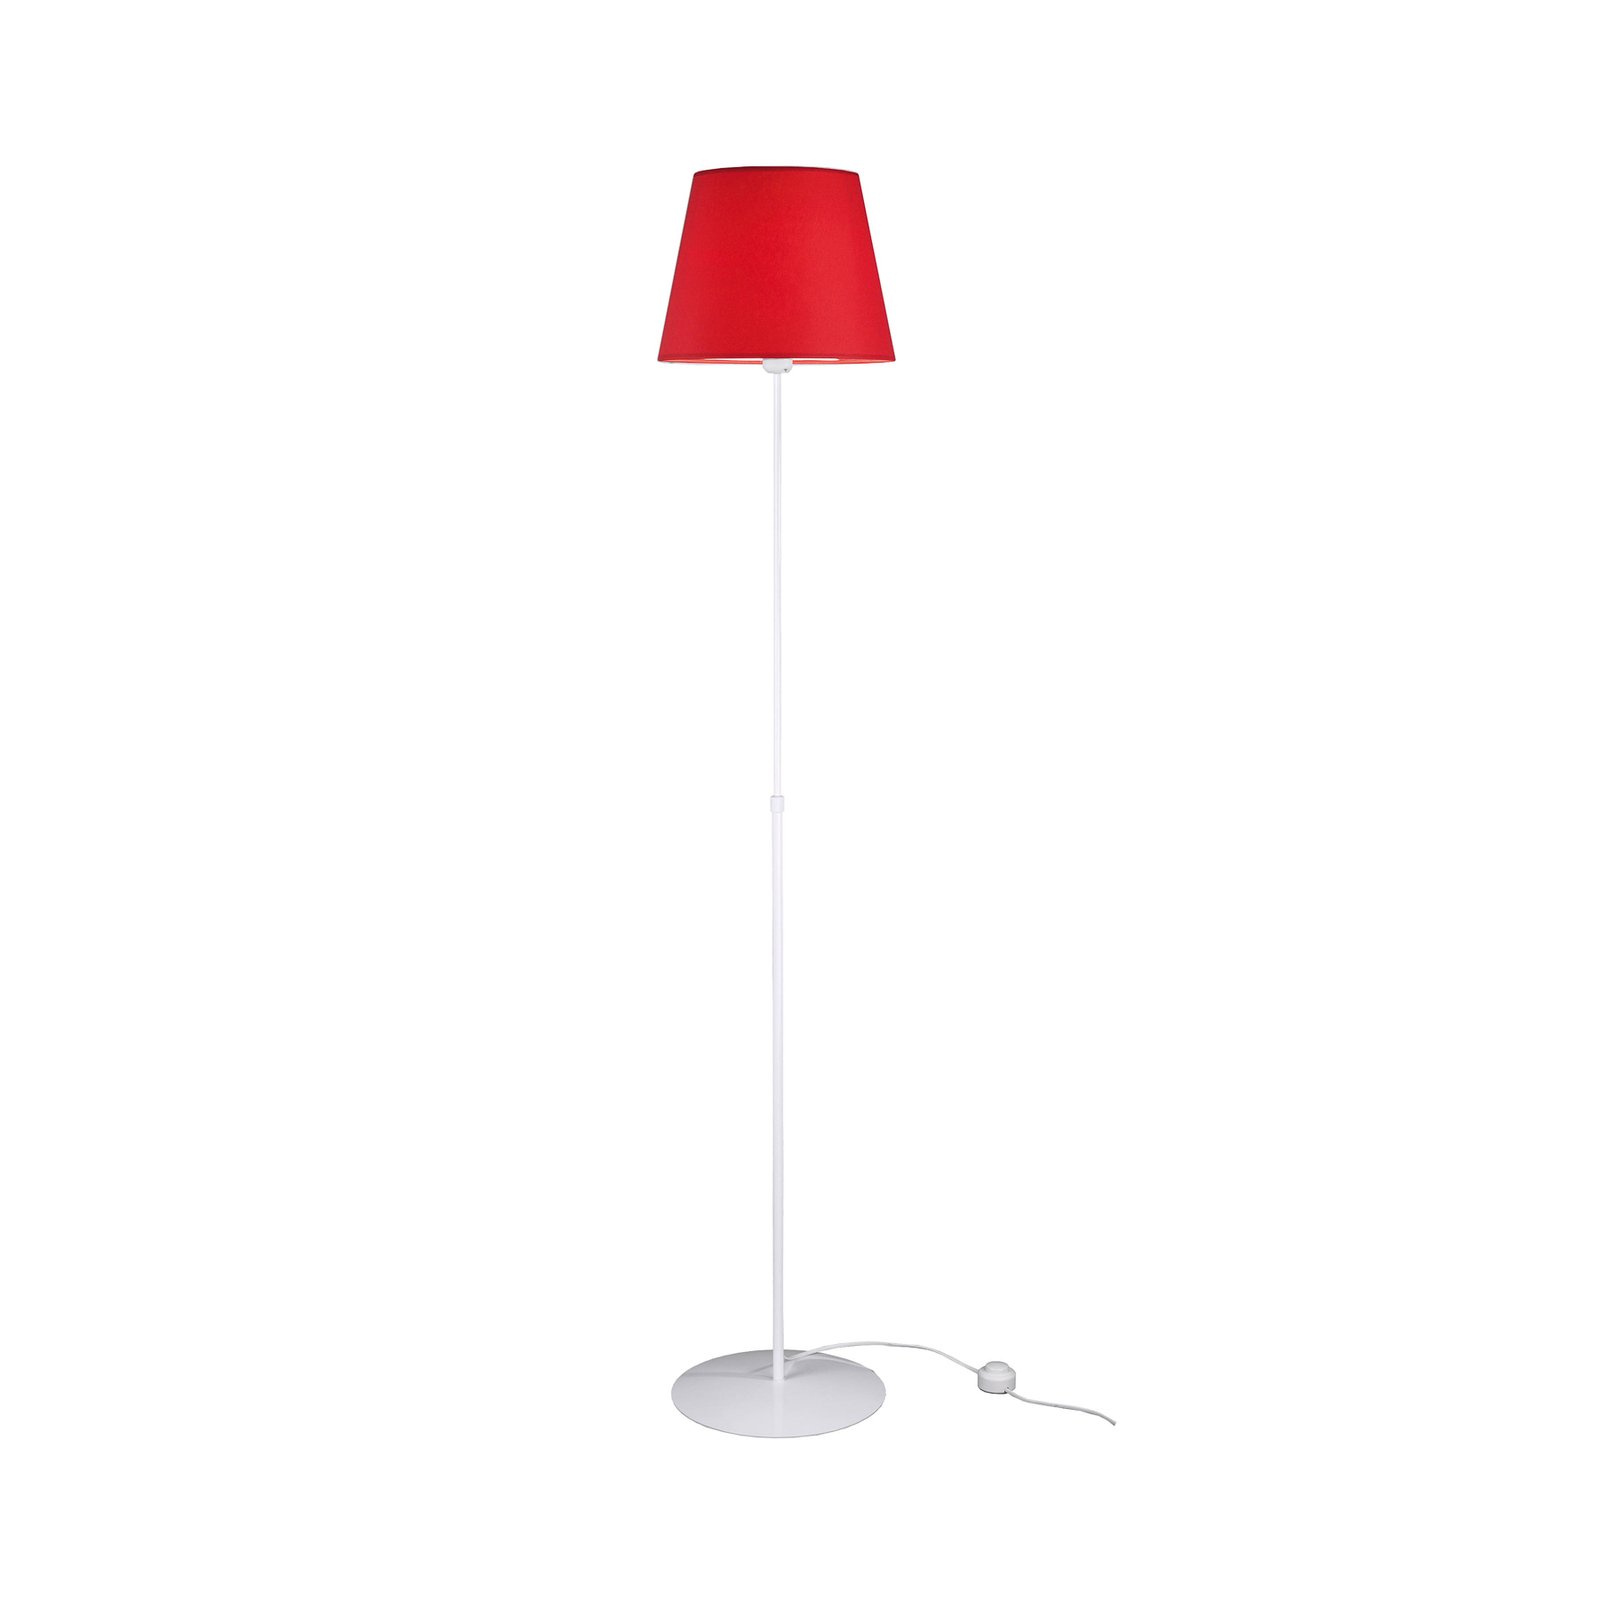 Aluminor Store álló lámpa, fehér/piros